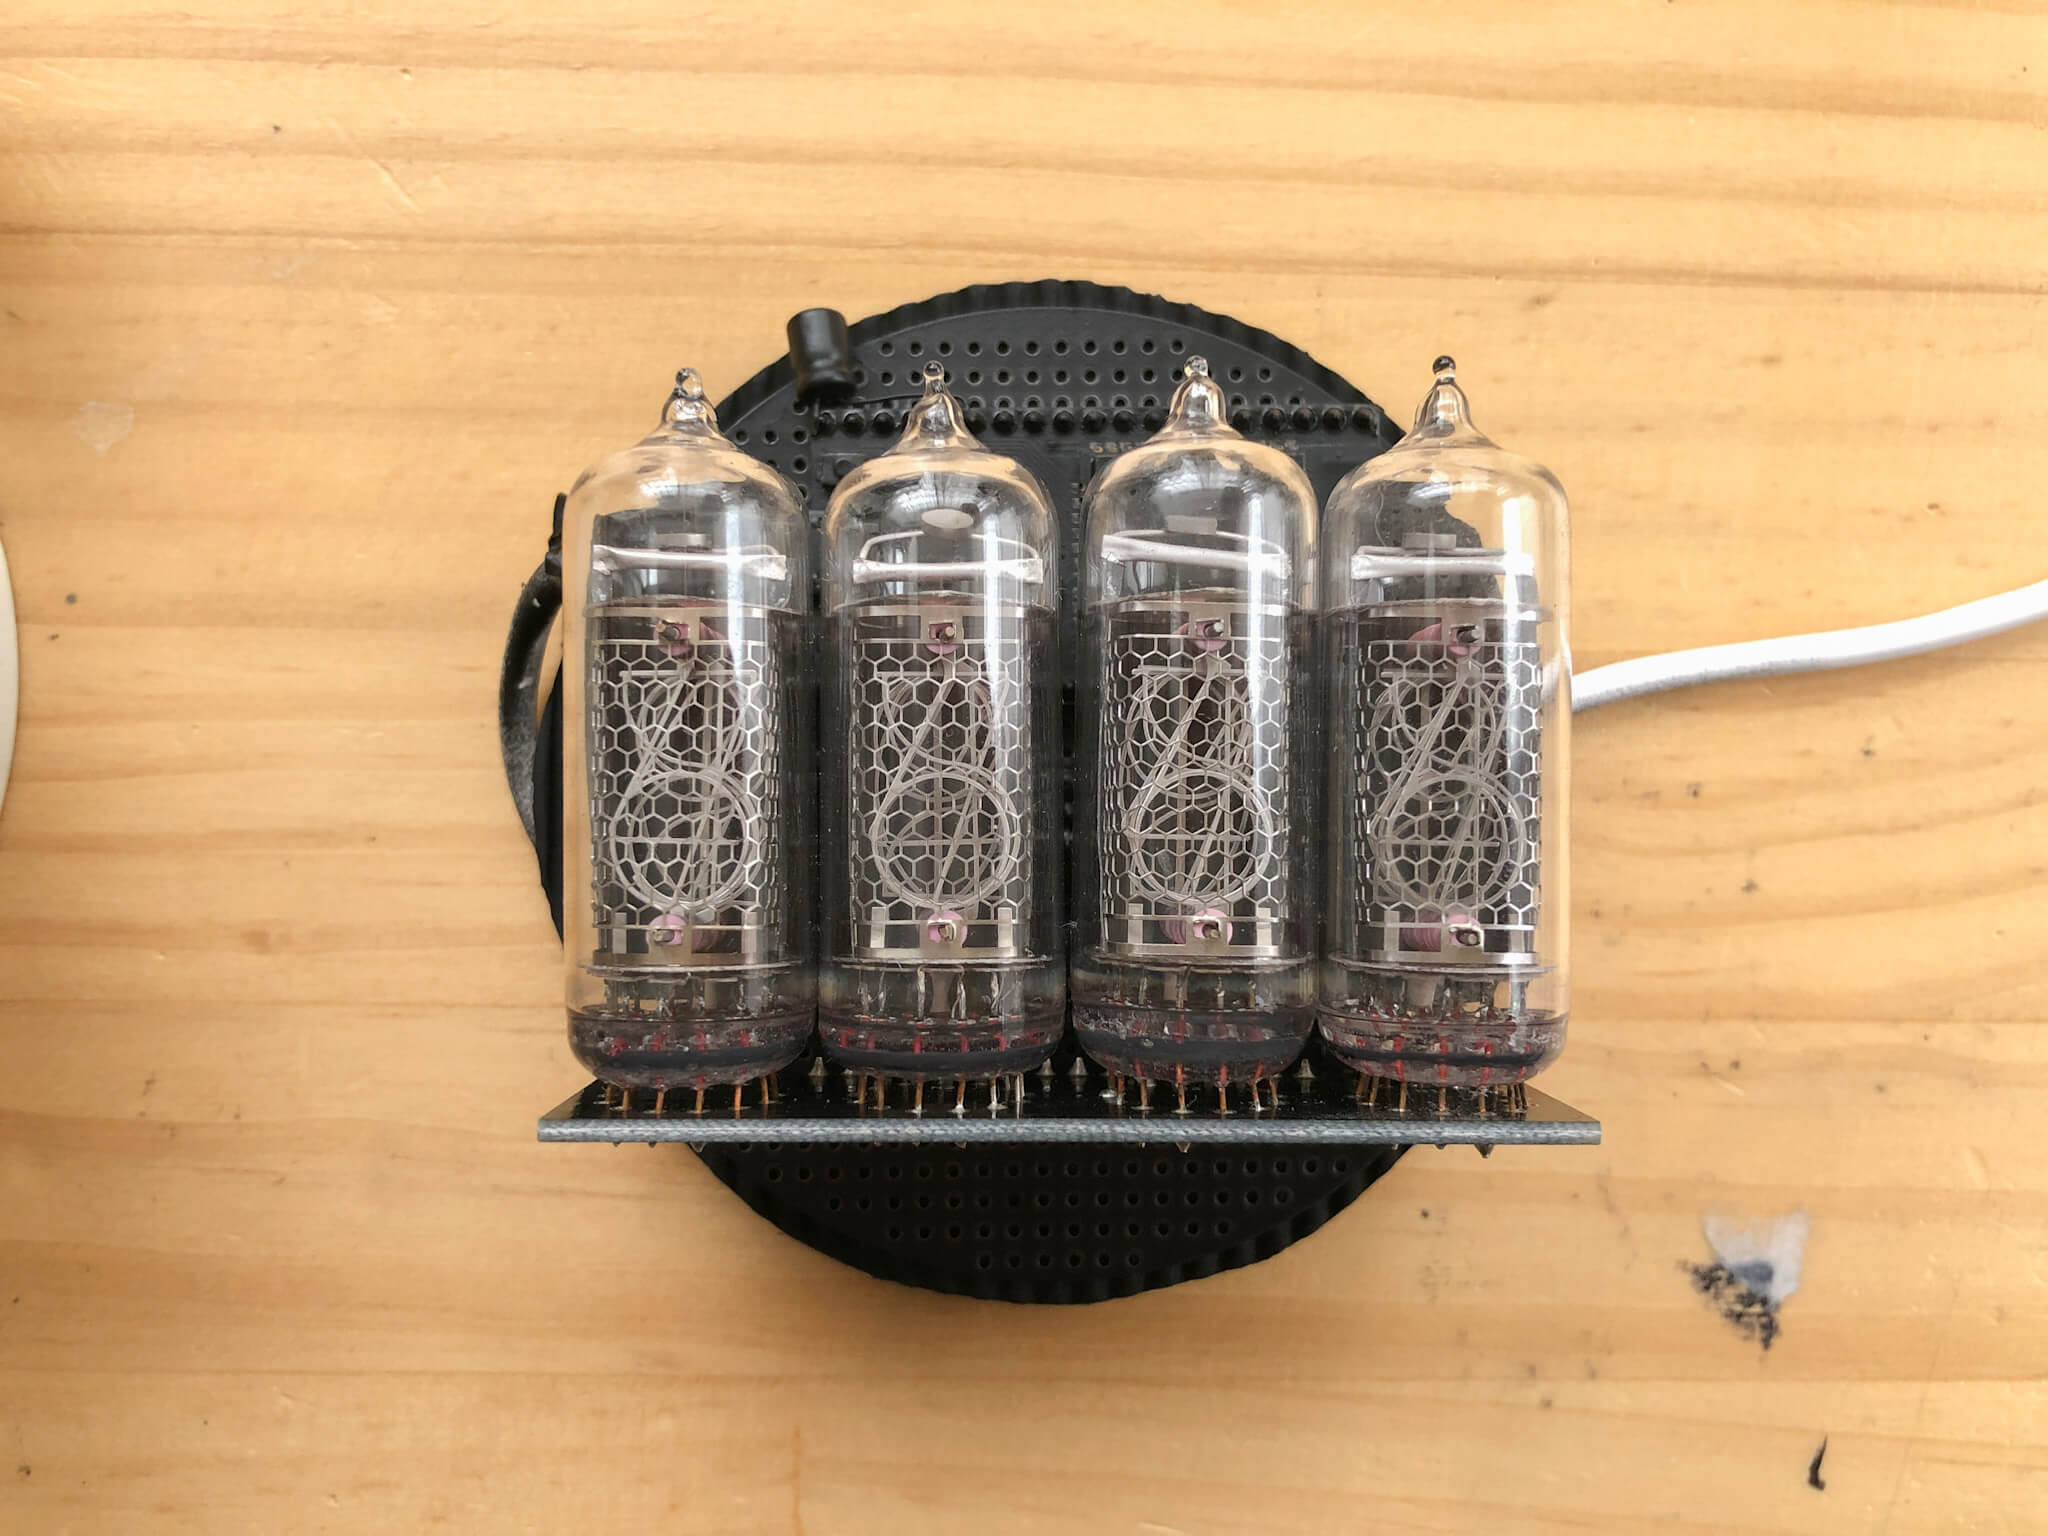 ニキシー管IN-14の回路を目覚まし時計に内蔵して「目覚まし時計風」の置き時計を作っています | kohacraftのblog